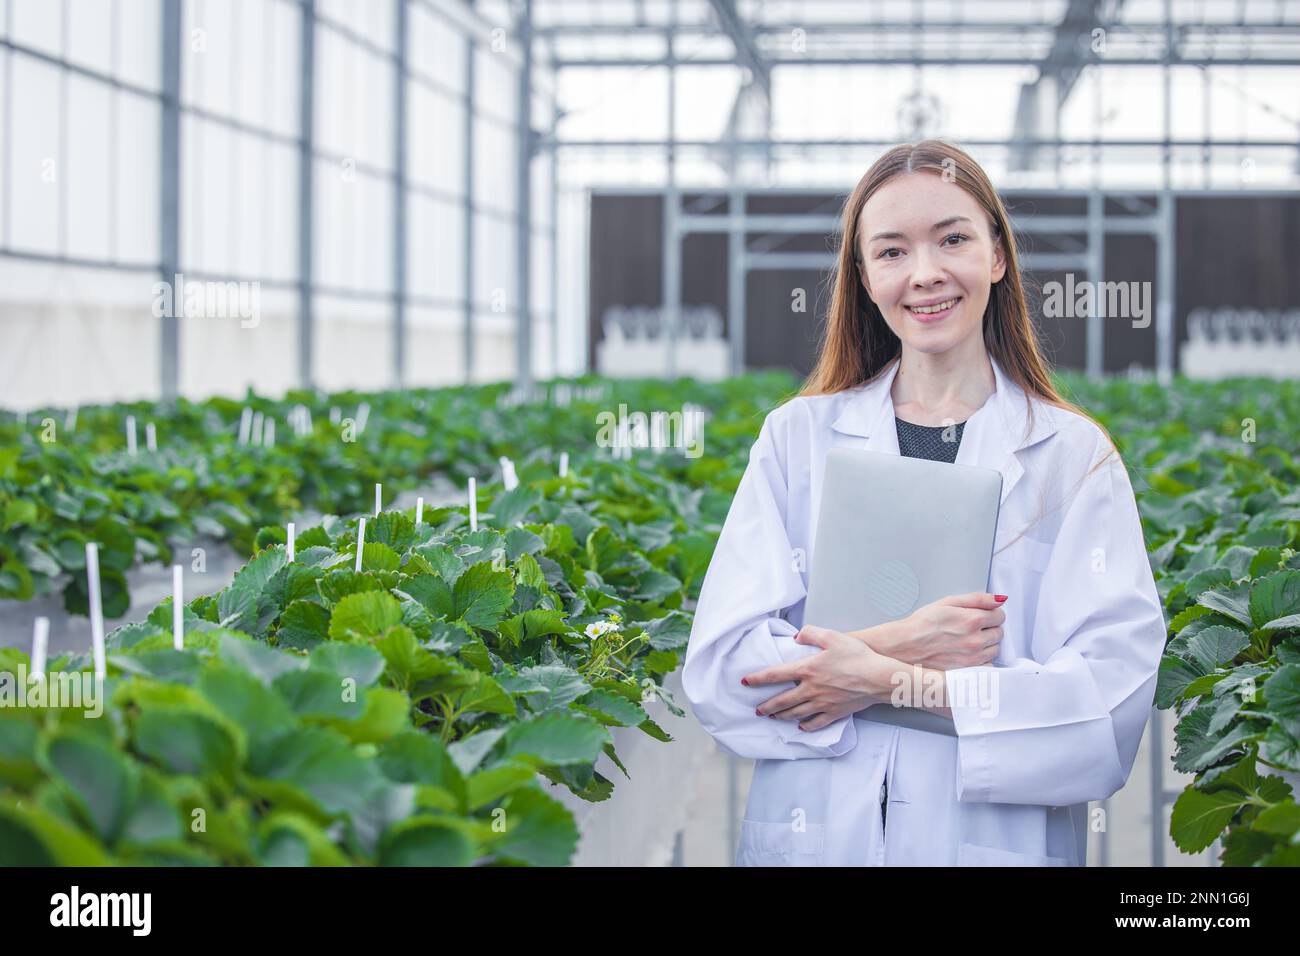 Porträtwissenschaftlerin im Grossgrünhaus-Bio-Erdbeer-Landwirtschaftsbetrieb für die arbeitende Frau in der Pflanzenforschung. Stockfoto